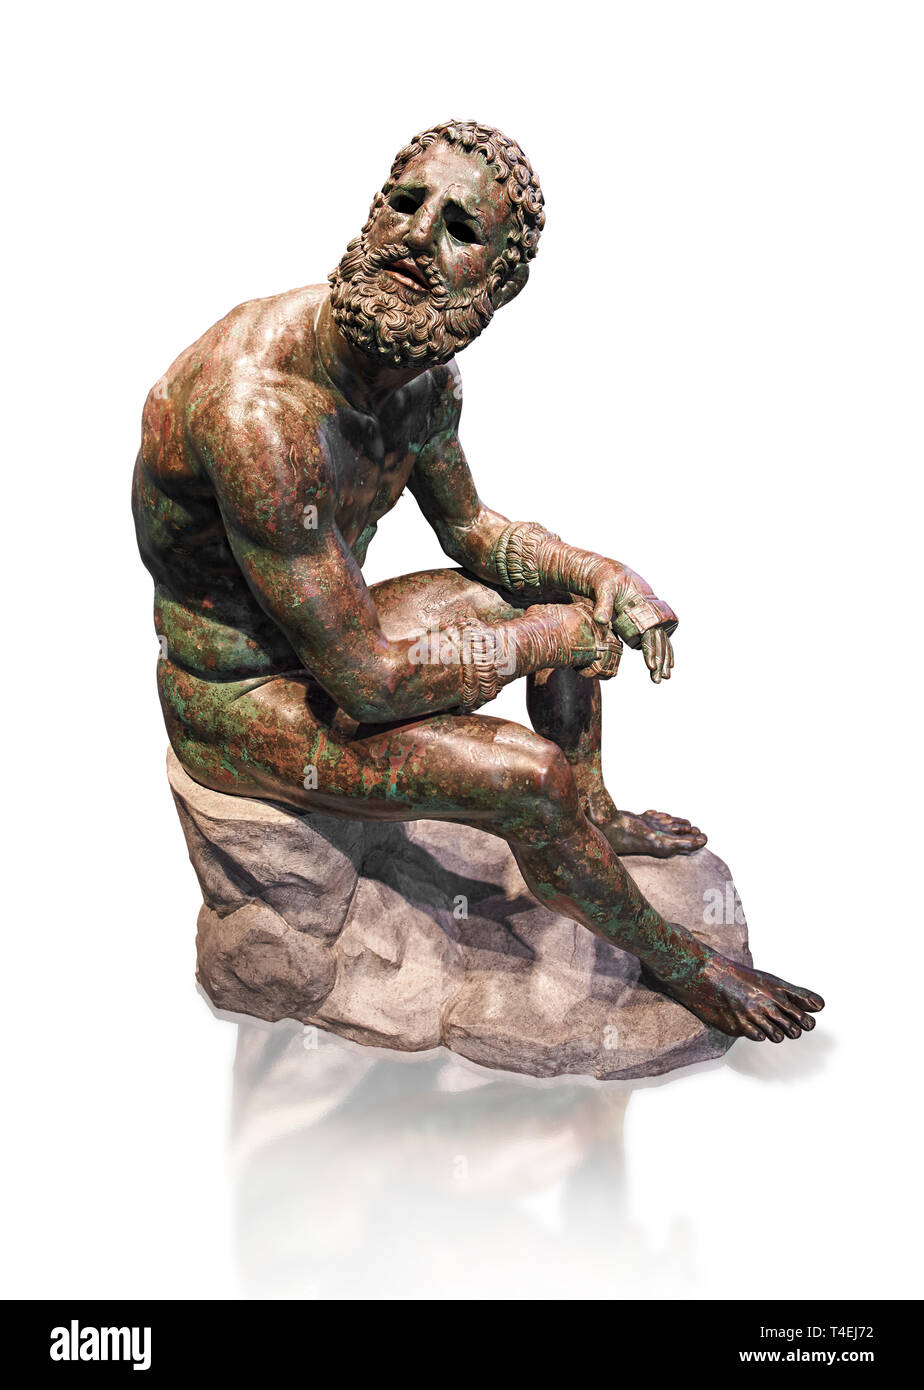 Raro griego original estatua de bronce de un atleta después de un combate  de boxeo, un 1% BC. El atleta, sentado sobre una roca, está descansando  después de un combate de boxeo